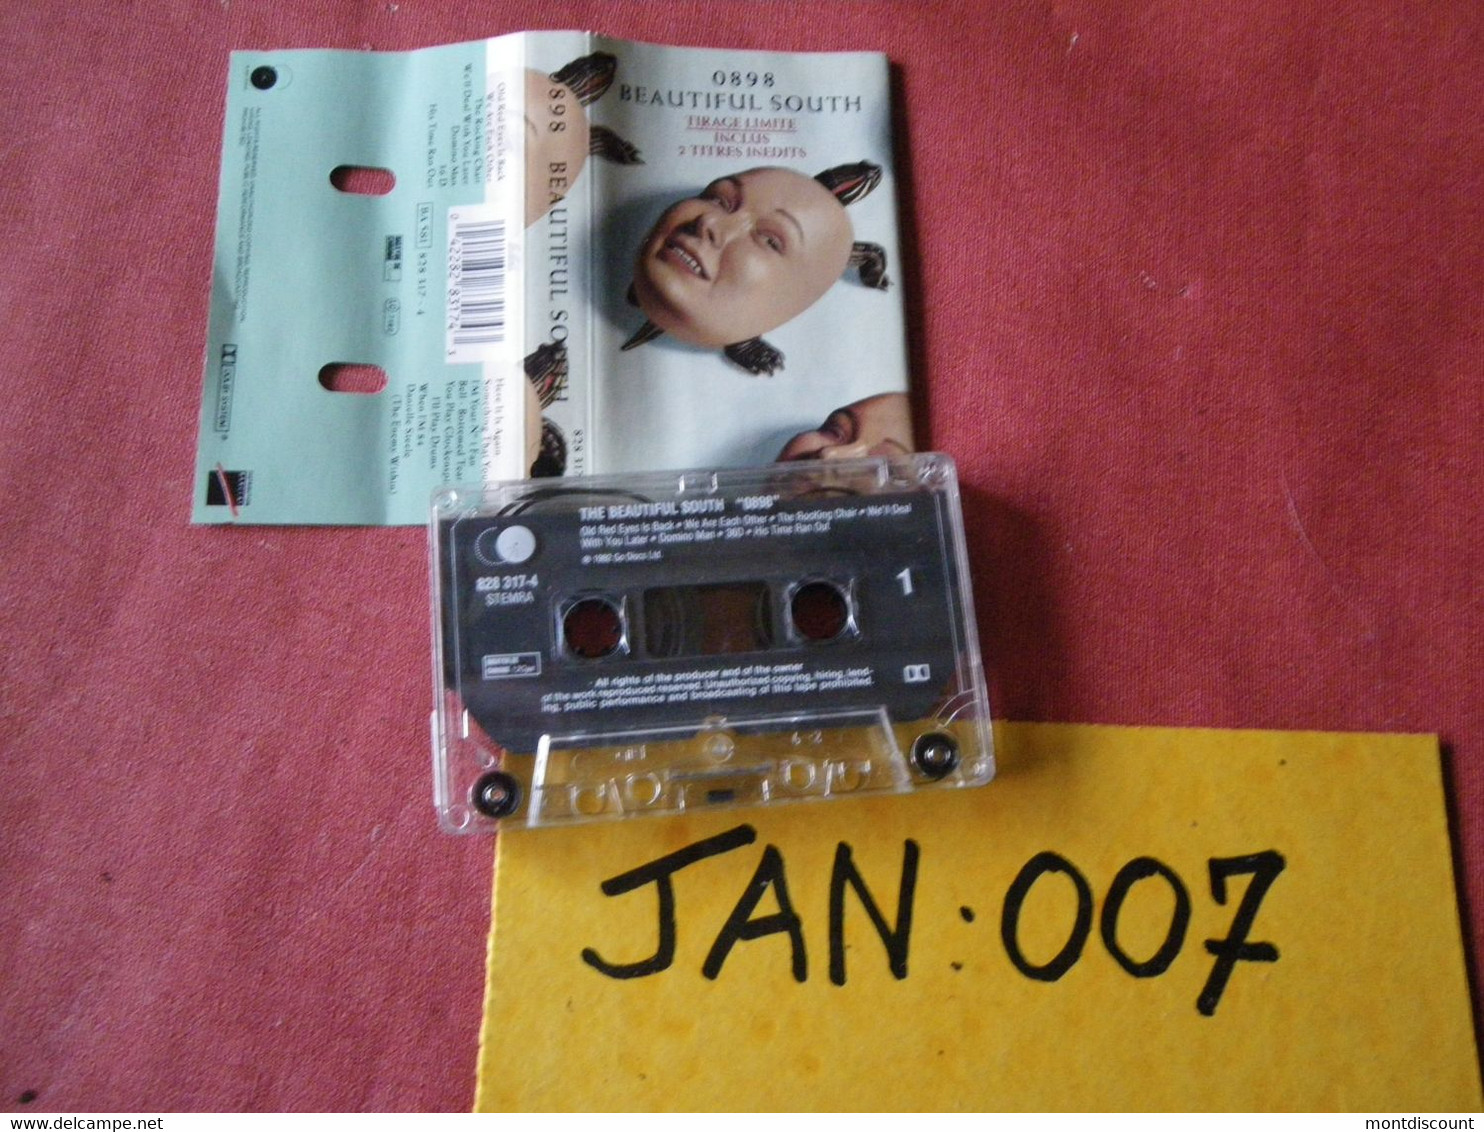 0898 BEAUTIFUL SOUTH K7 AUDIO VOIR PHOTO...ET REGARDEZ LES AUTRES (PLUSIEURS) (JAN 007) - Cassettes Audio